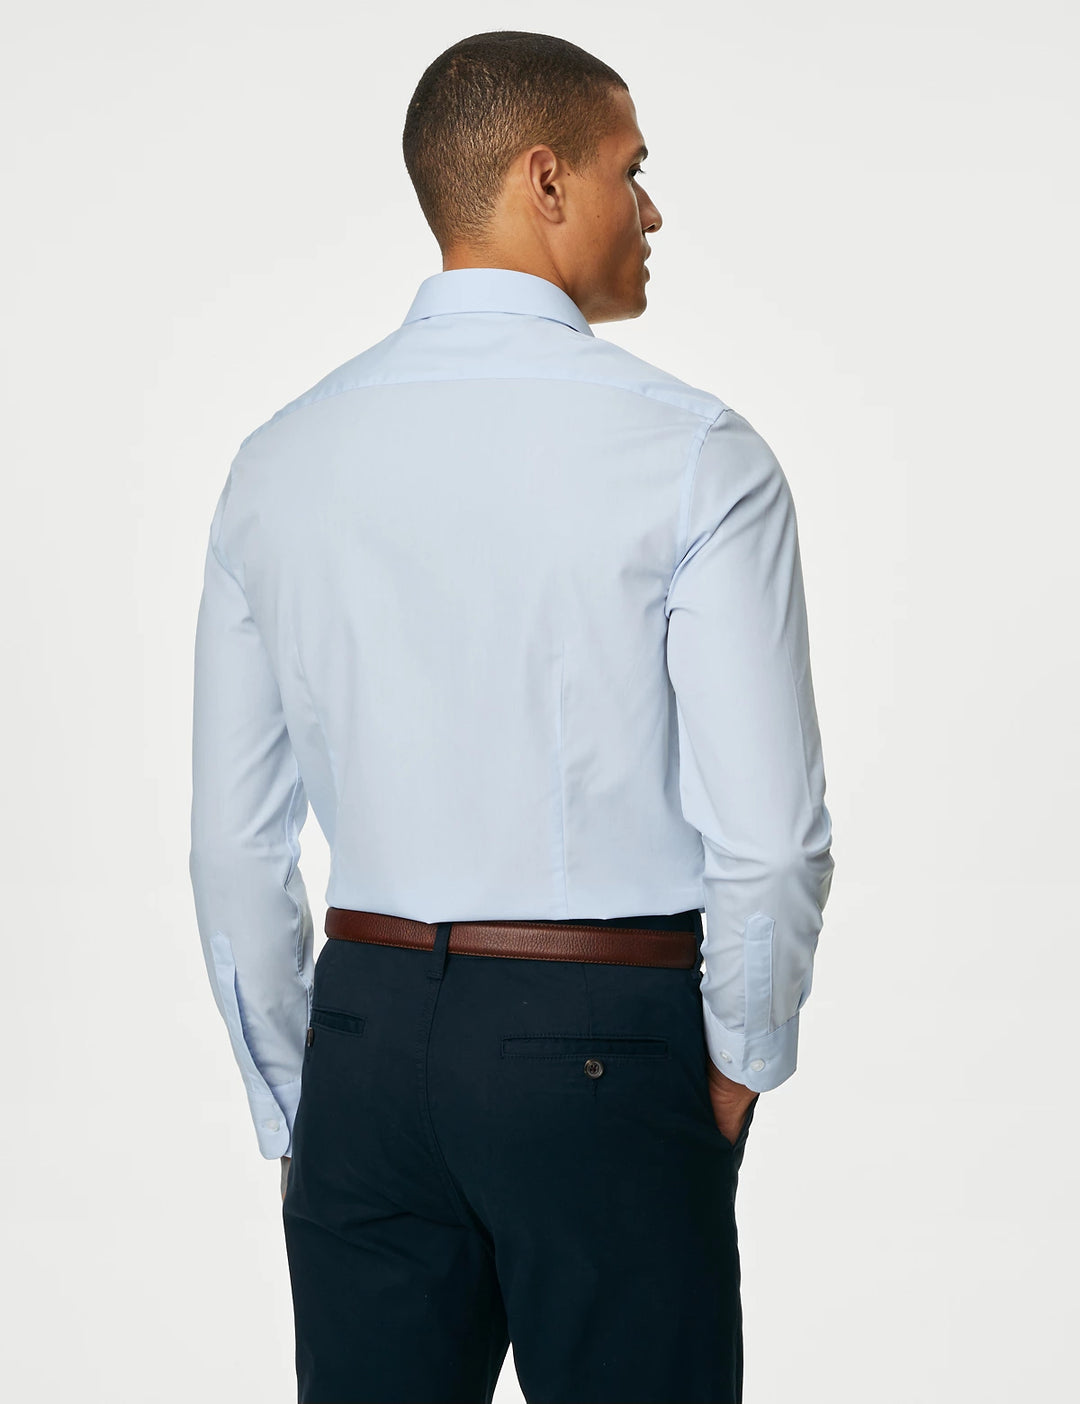 M&S Mens L/S ( 65-35% ) Plain Formal Shirt T11/2429S